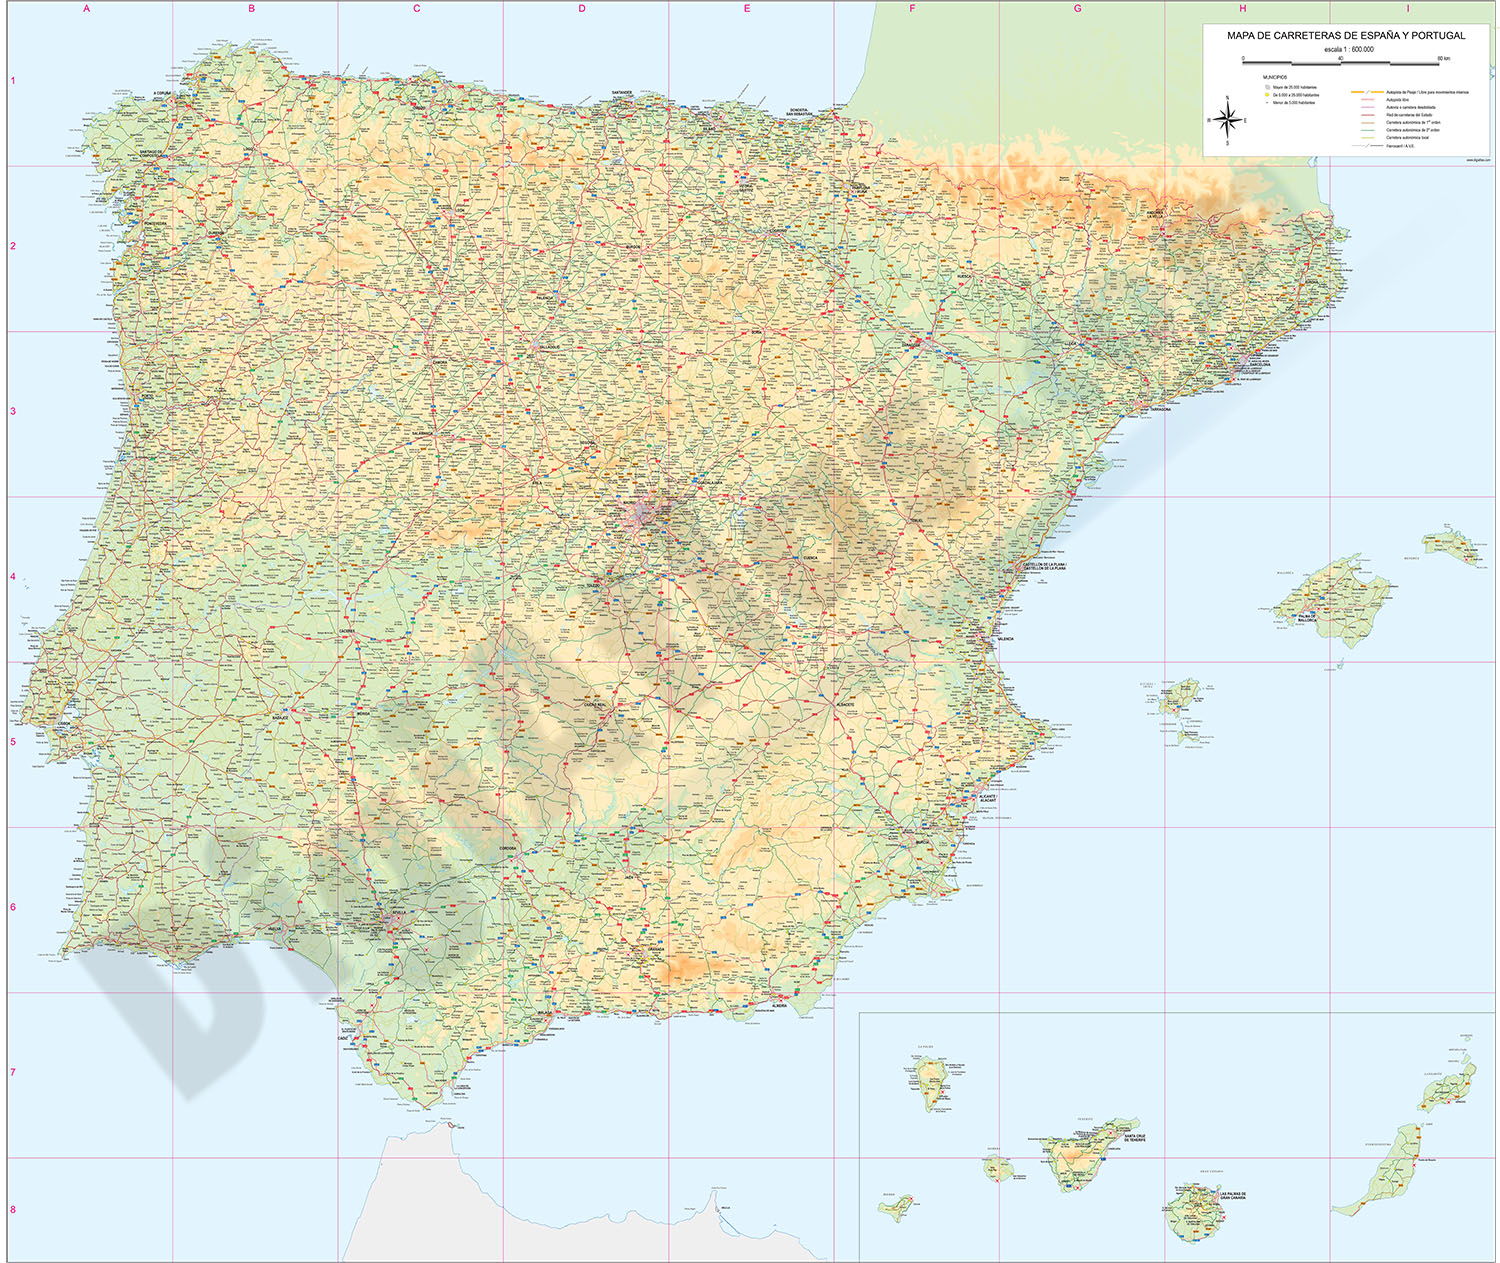   Mapa de carreteras de España y Portugal